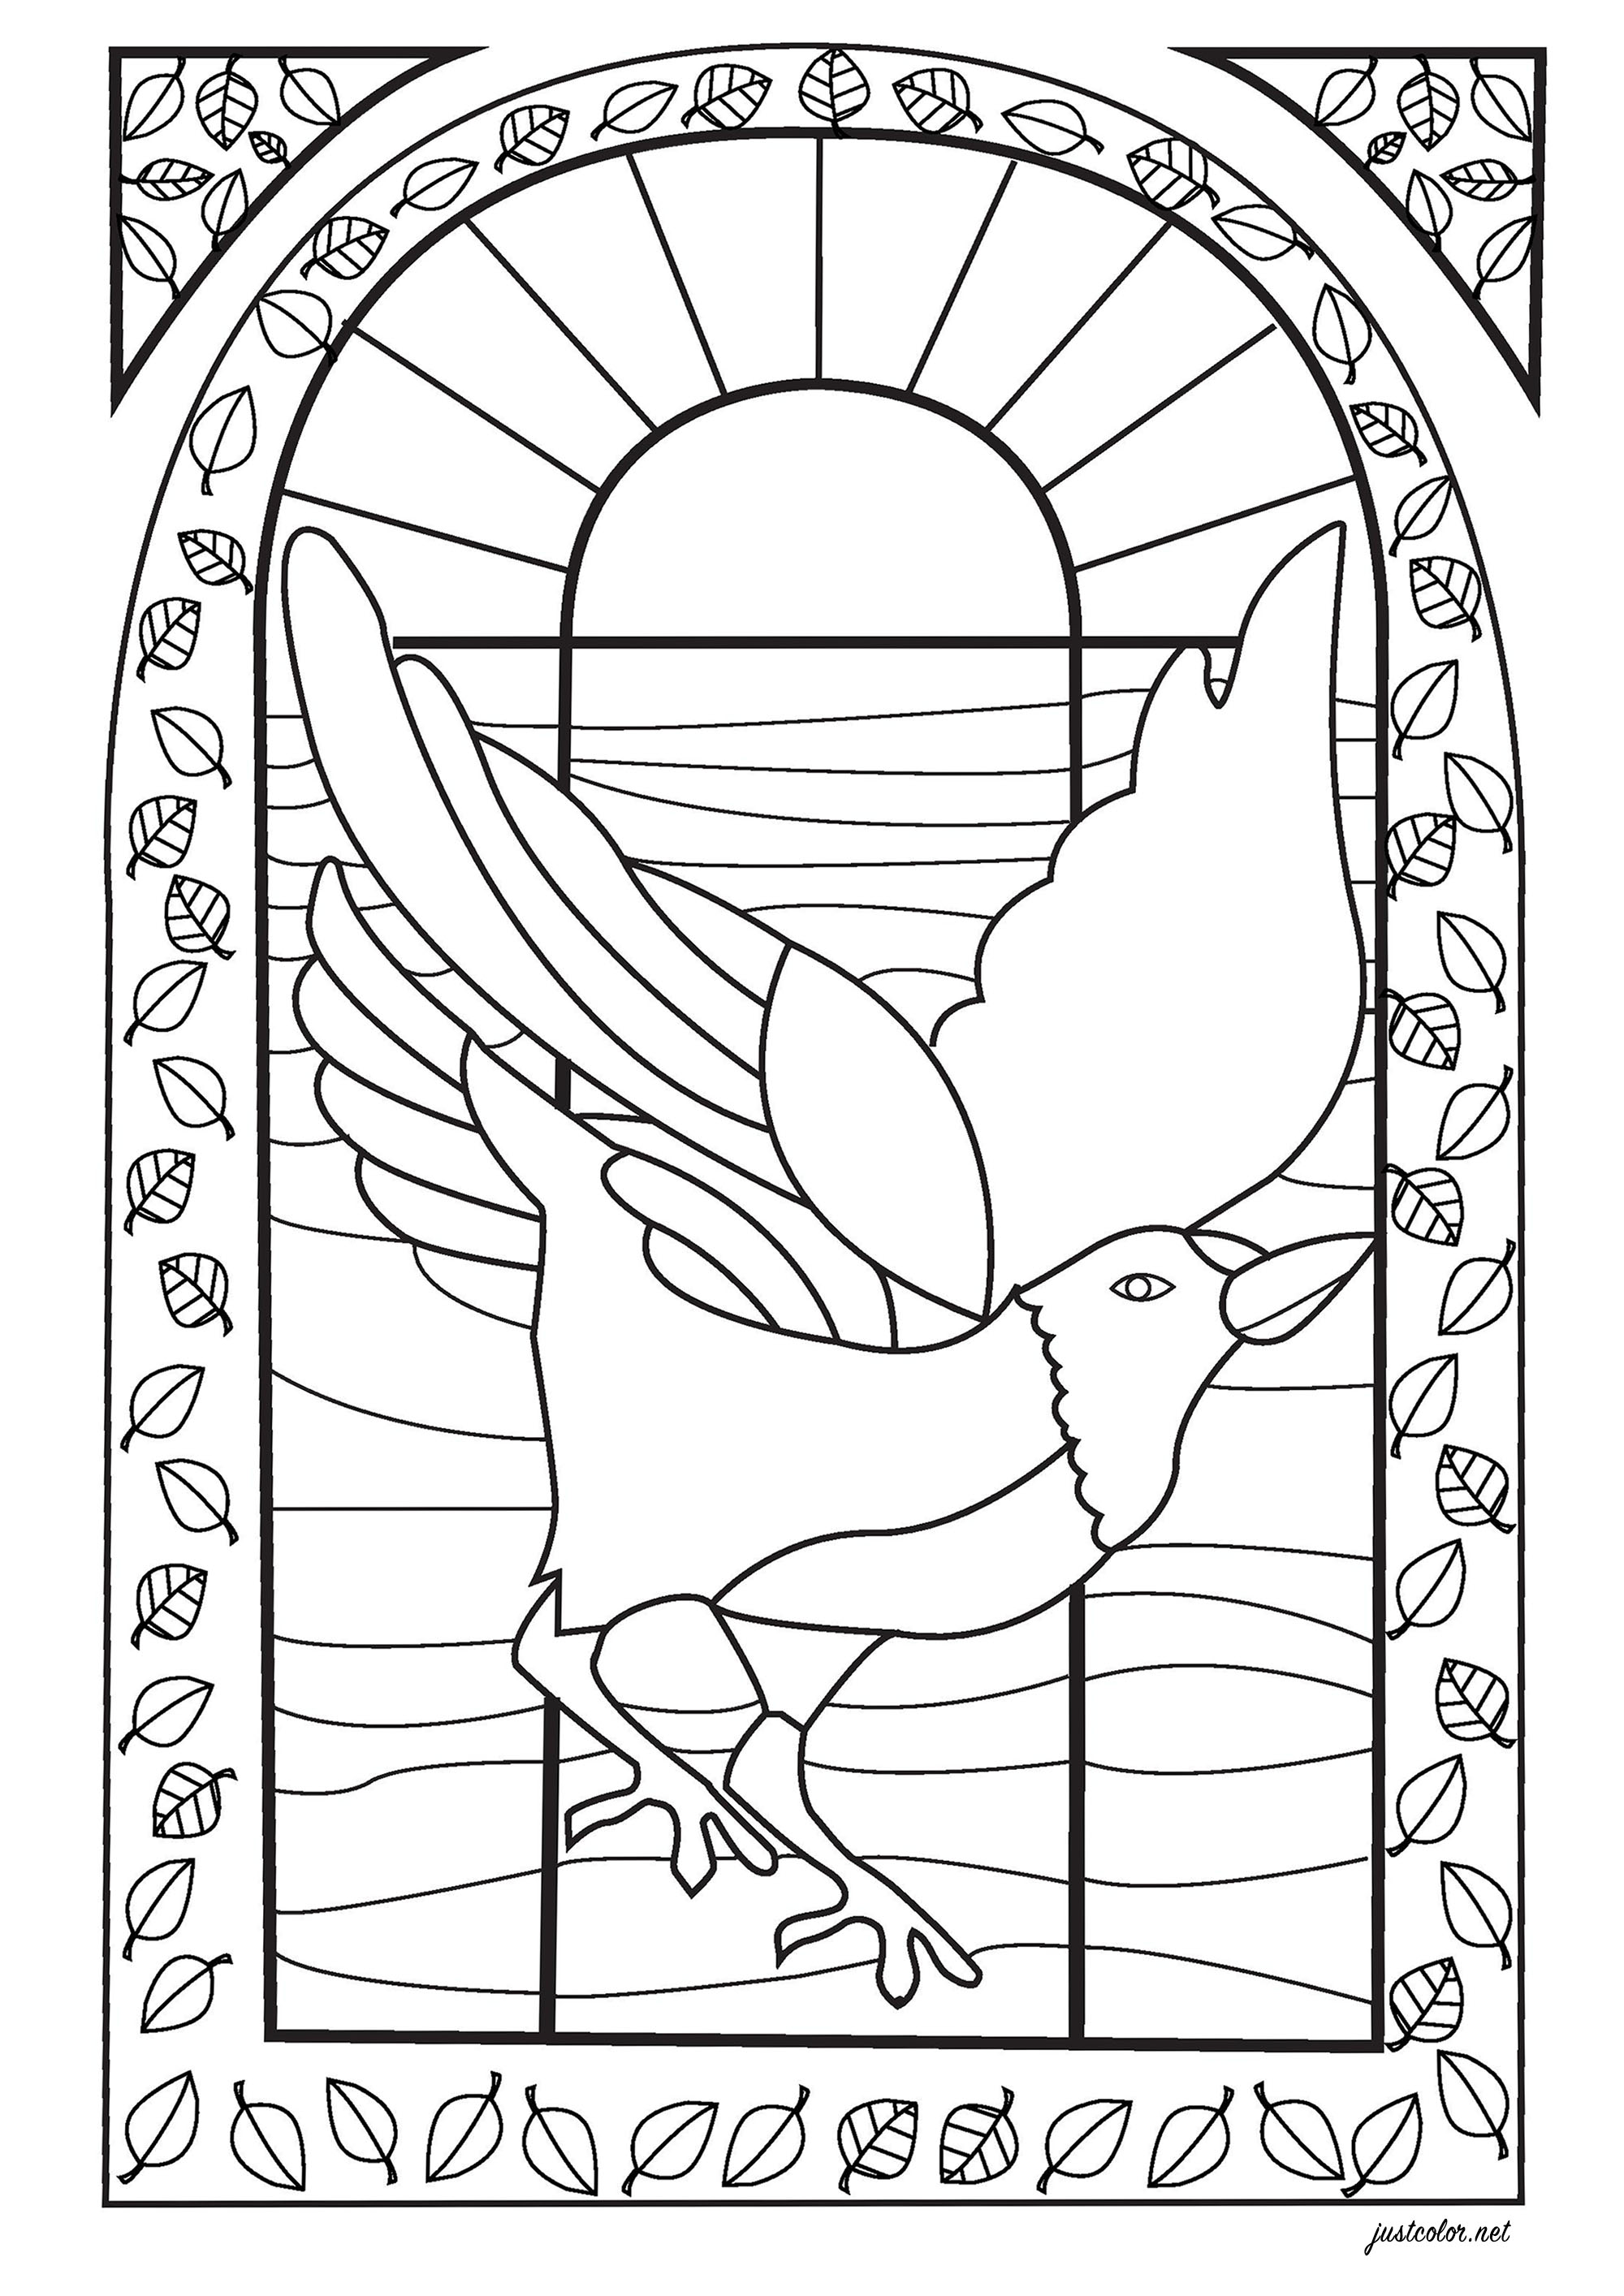 Dibujo de un pájaro para colorear, dibujado al estilo de una vidriera, Artista : Salomé T